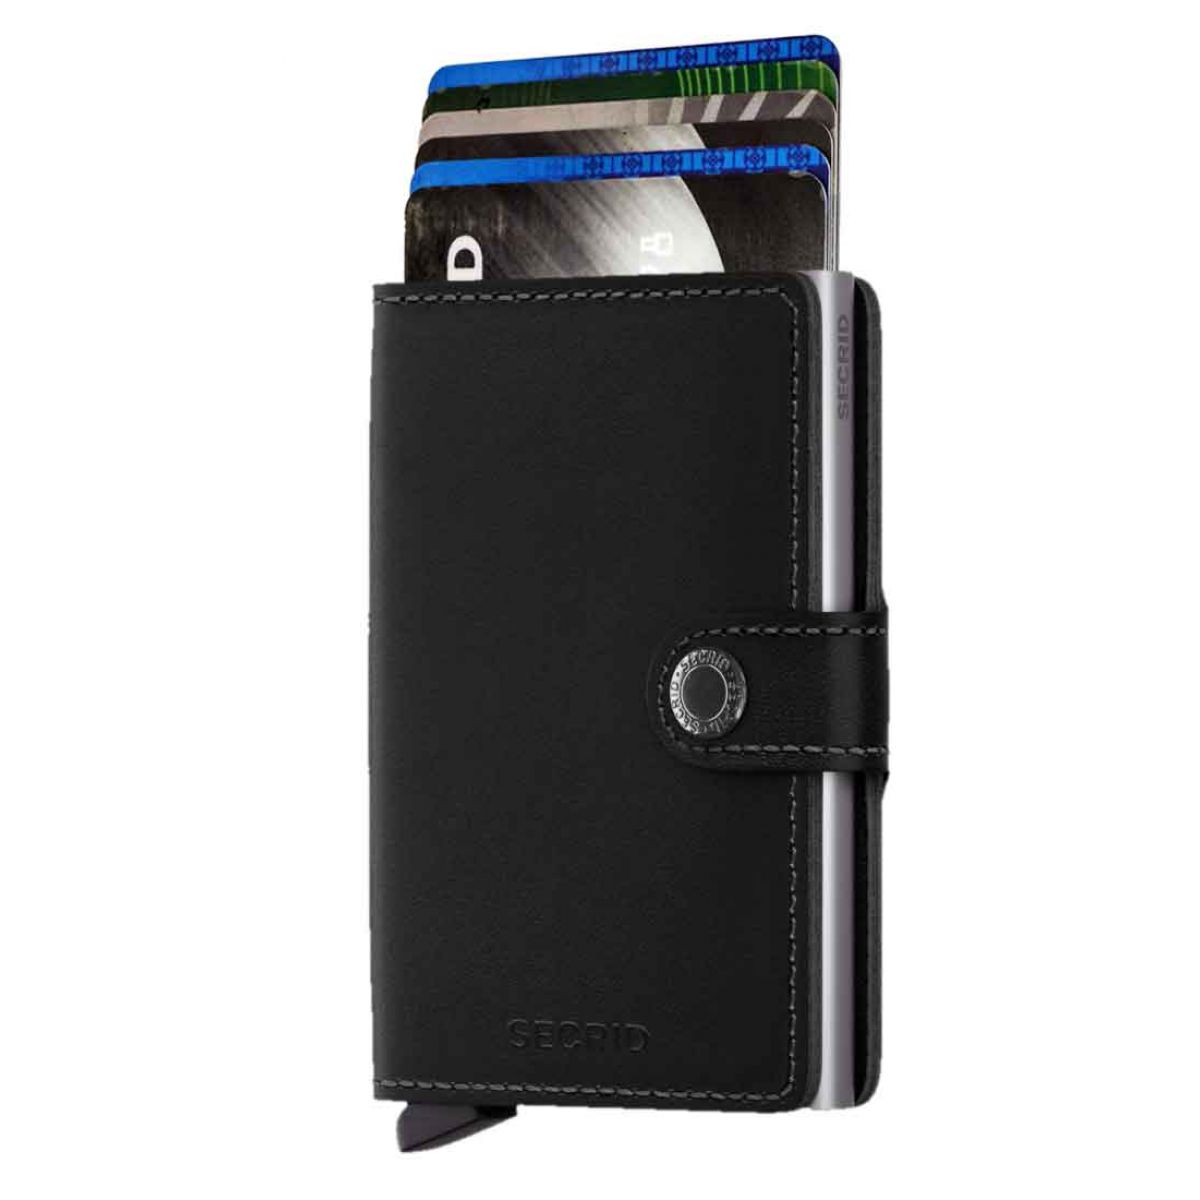 onaangenaam Automatisch efficiënt Secrid mini wallet leer original zwart- SECRID - product code- 8718215281009